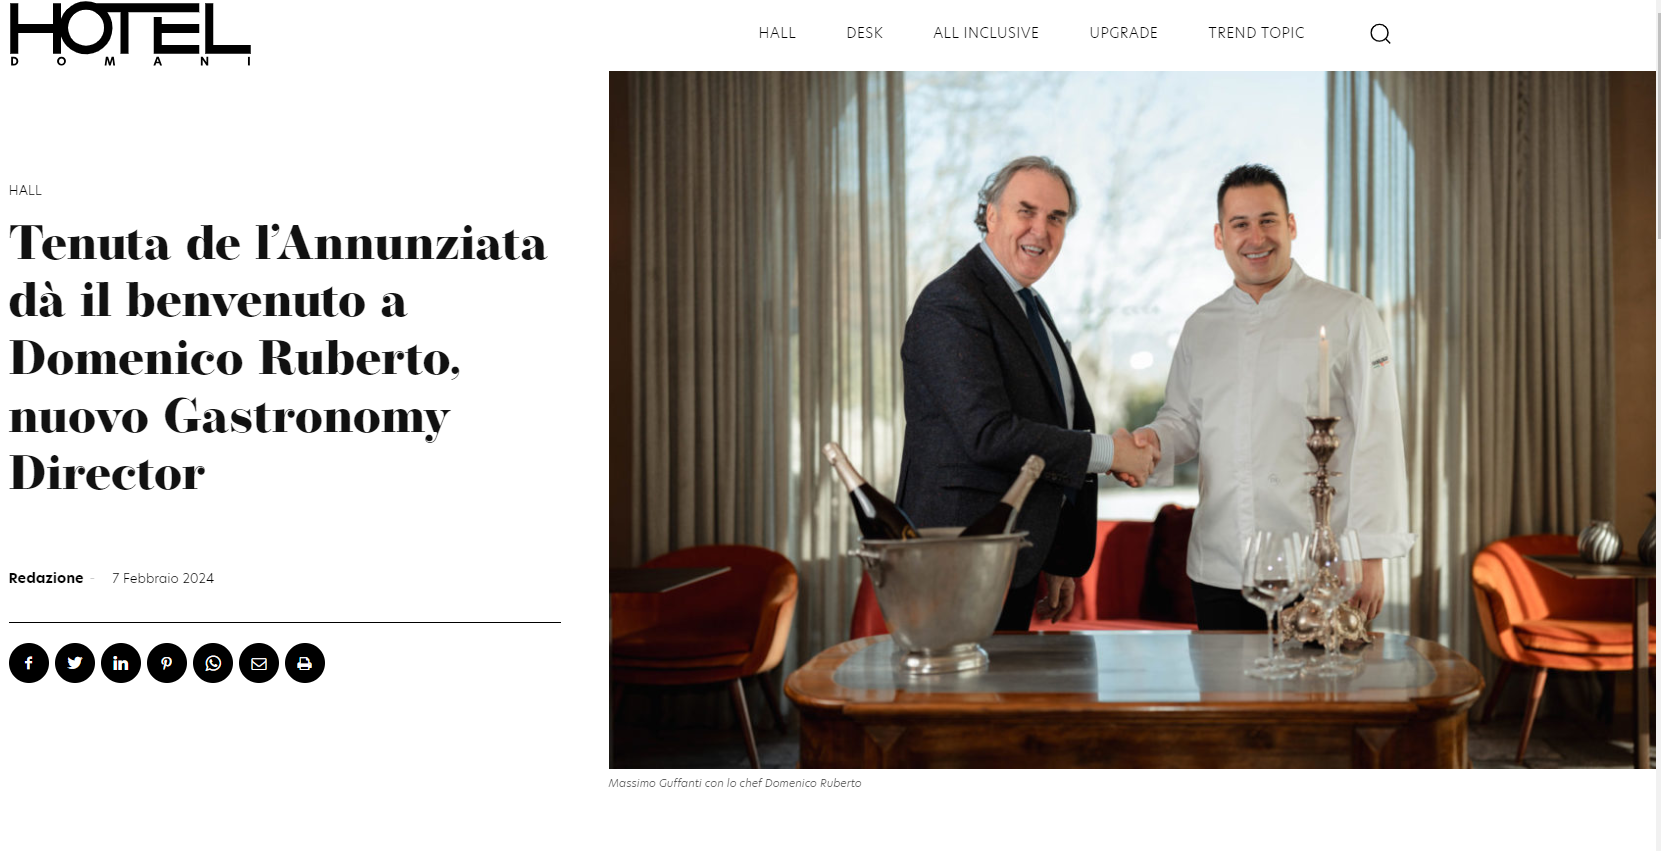 Hotel Damiani I Tenuta de l’Annunziata dà il benvenuto a Domenico Ruberto, nuovo Gastronomy Director